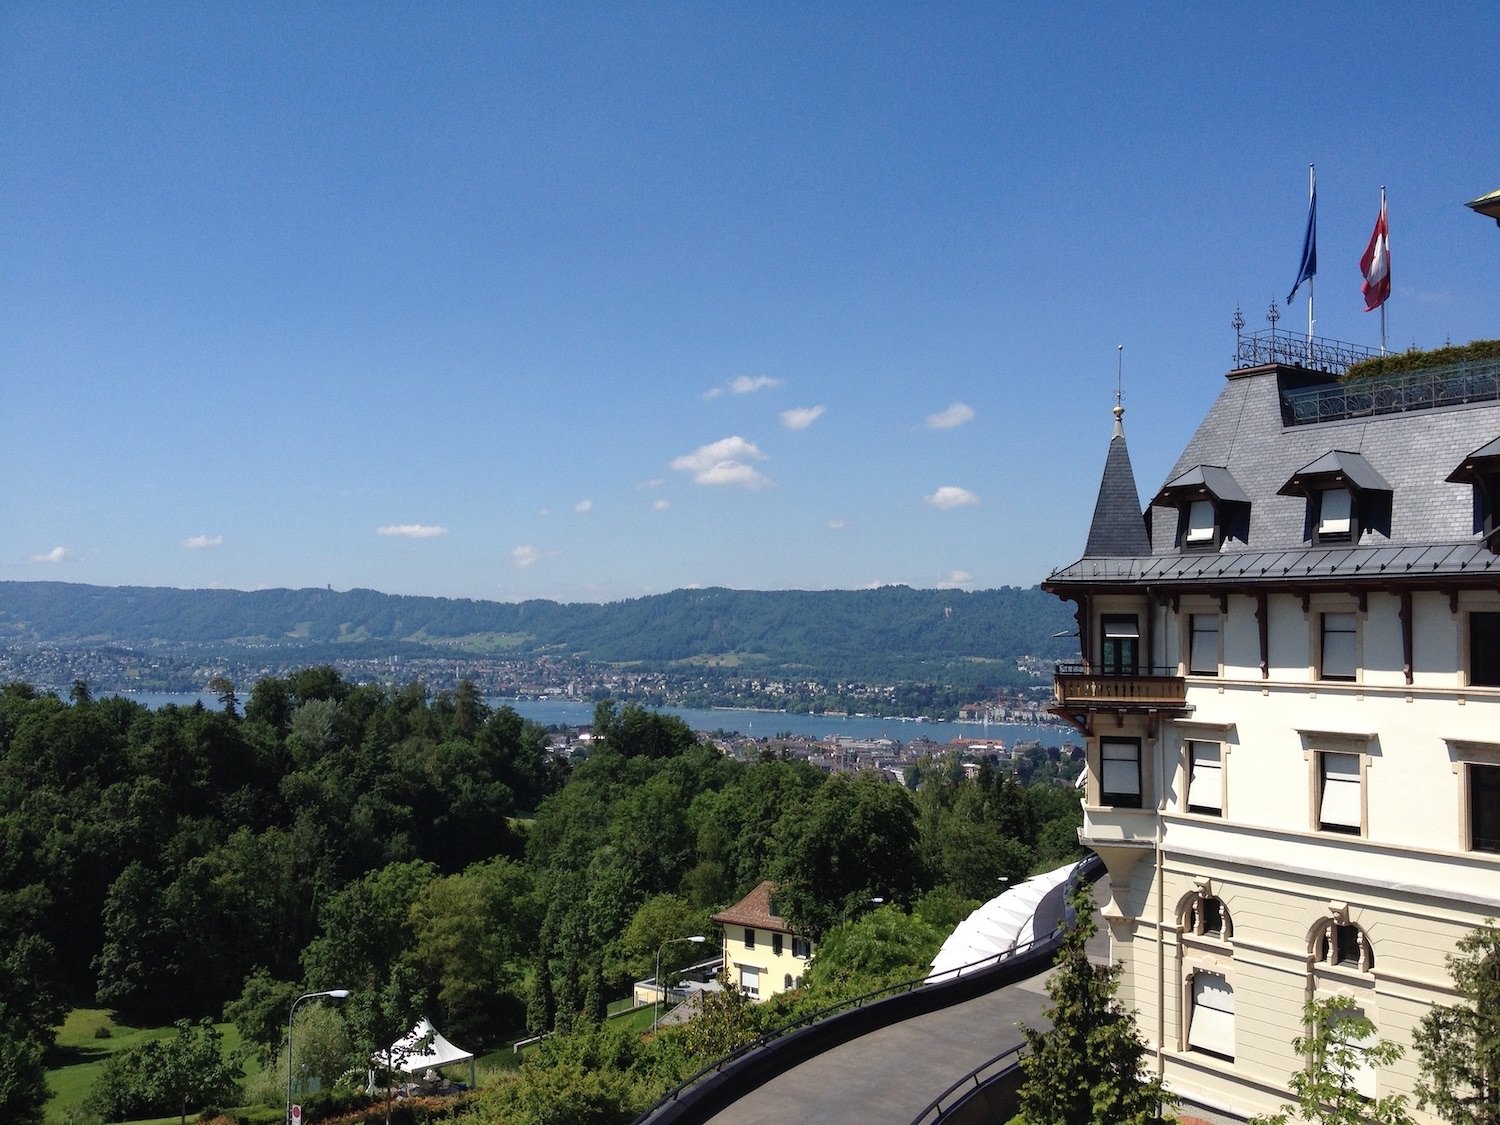 The Dolder Grand Zurich - luxury hotels Switzerland, part two